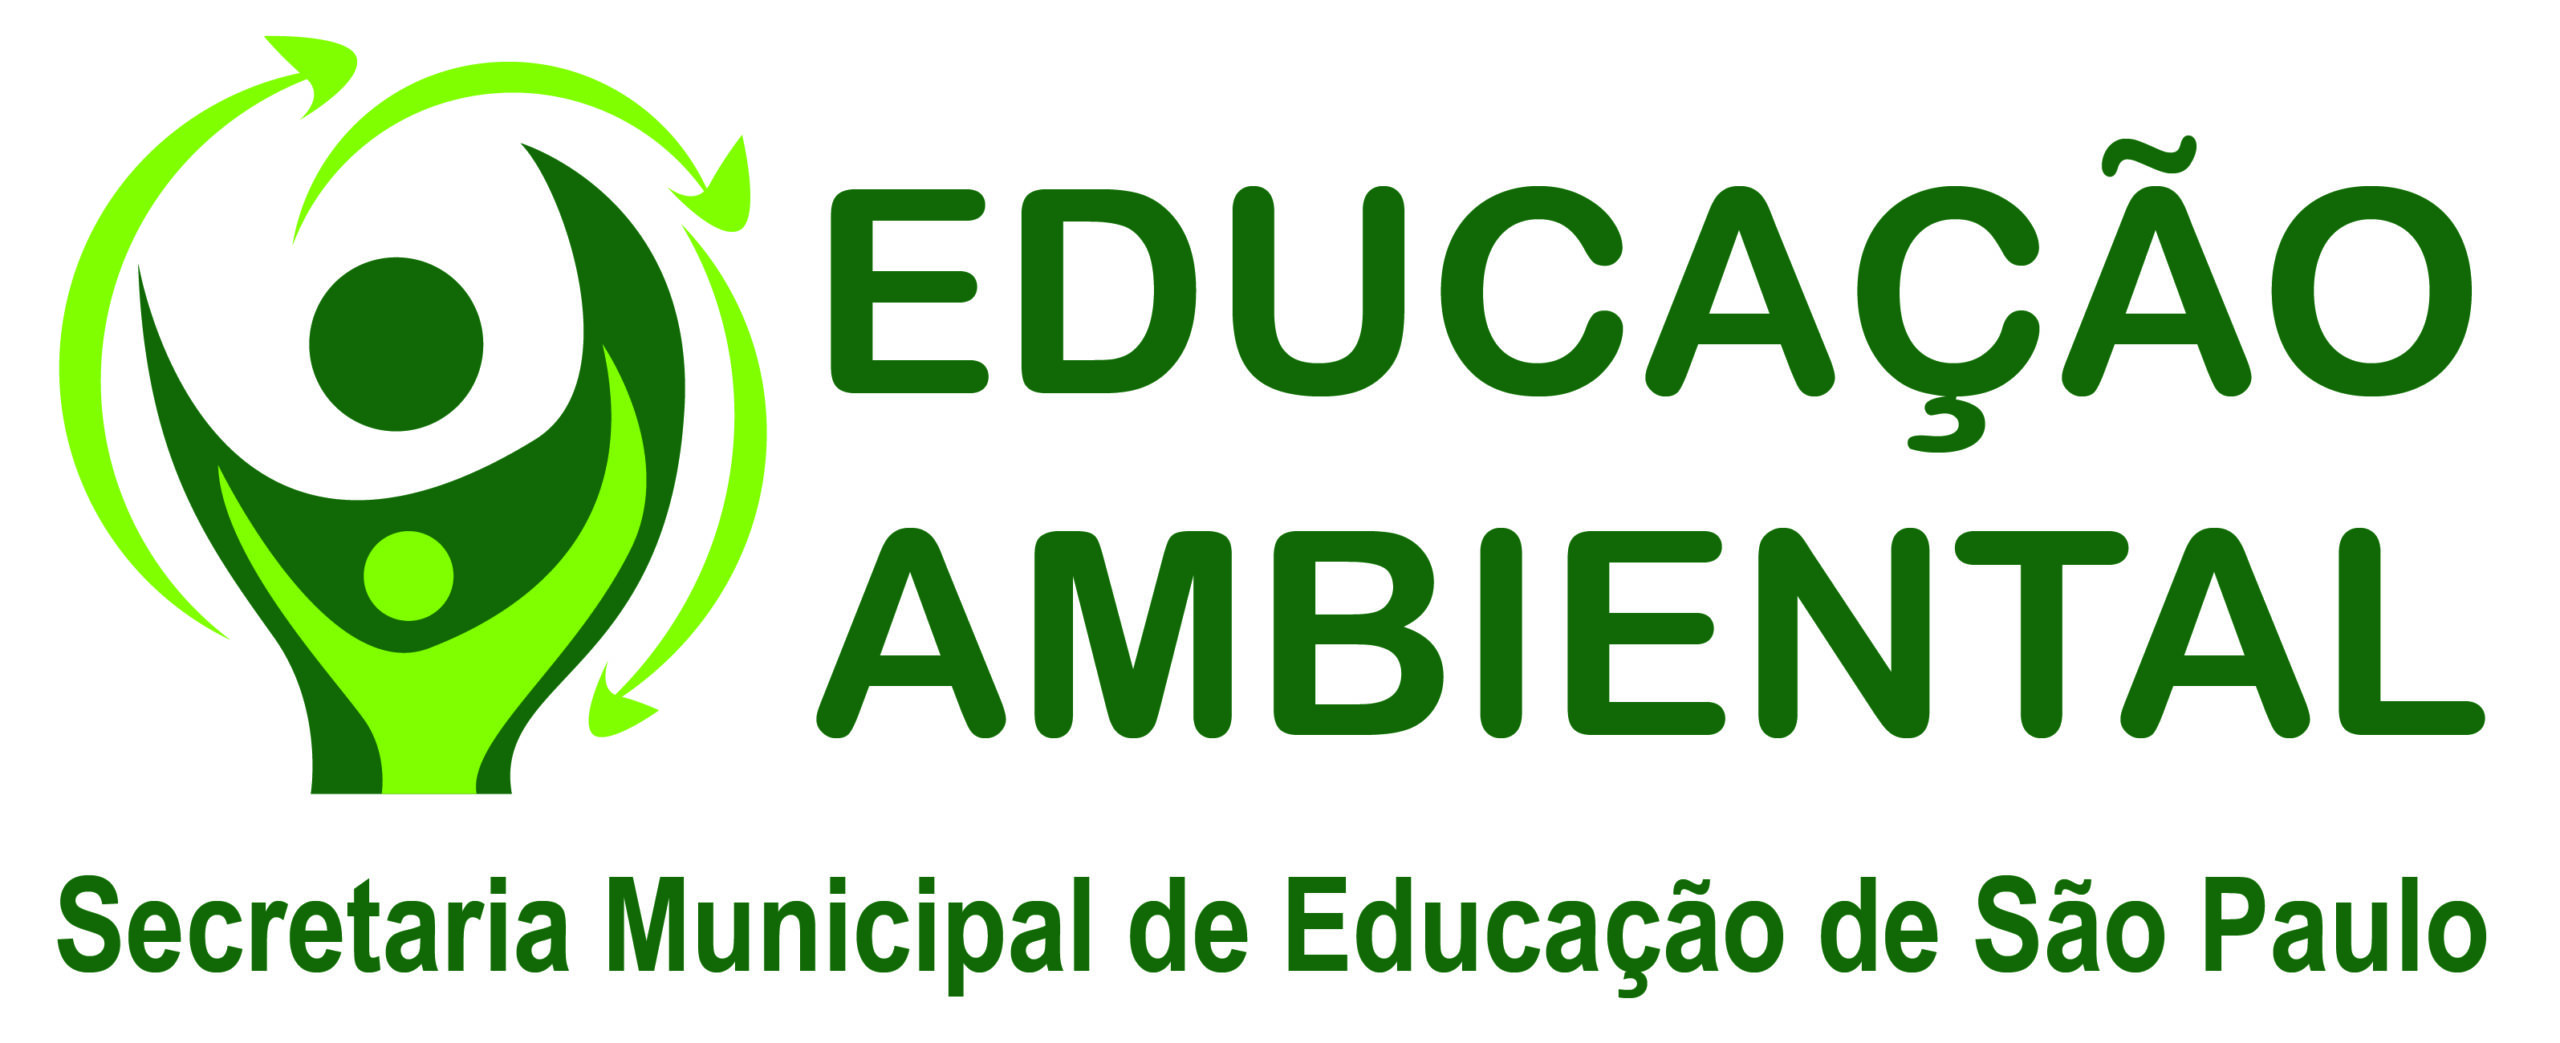 apresentação educação ambiental